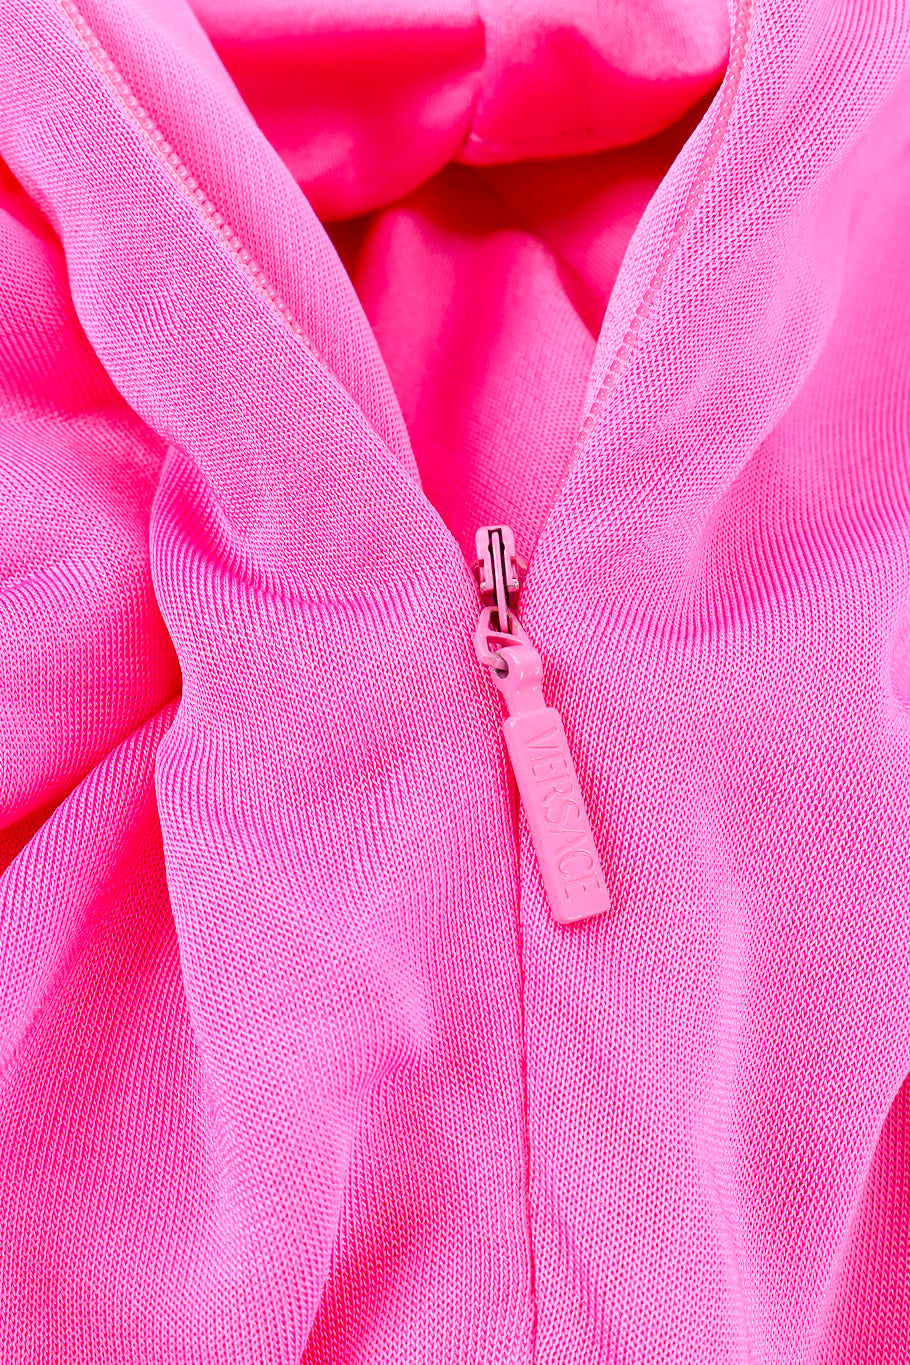 Versace Ruche One-Shoulder Dress zipper closure closeup @Recessla